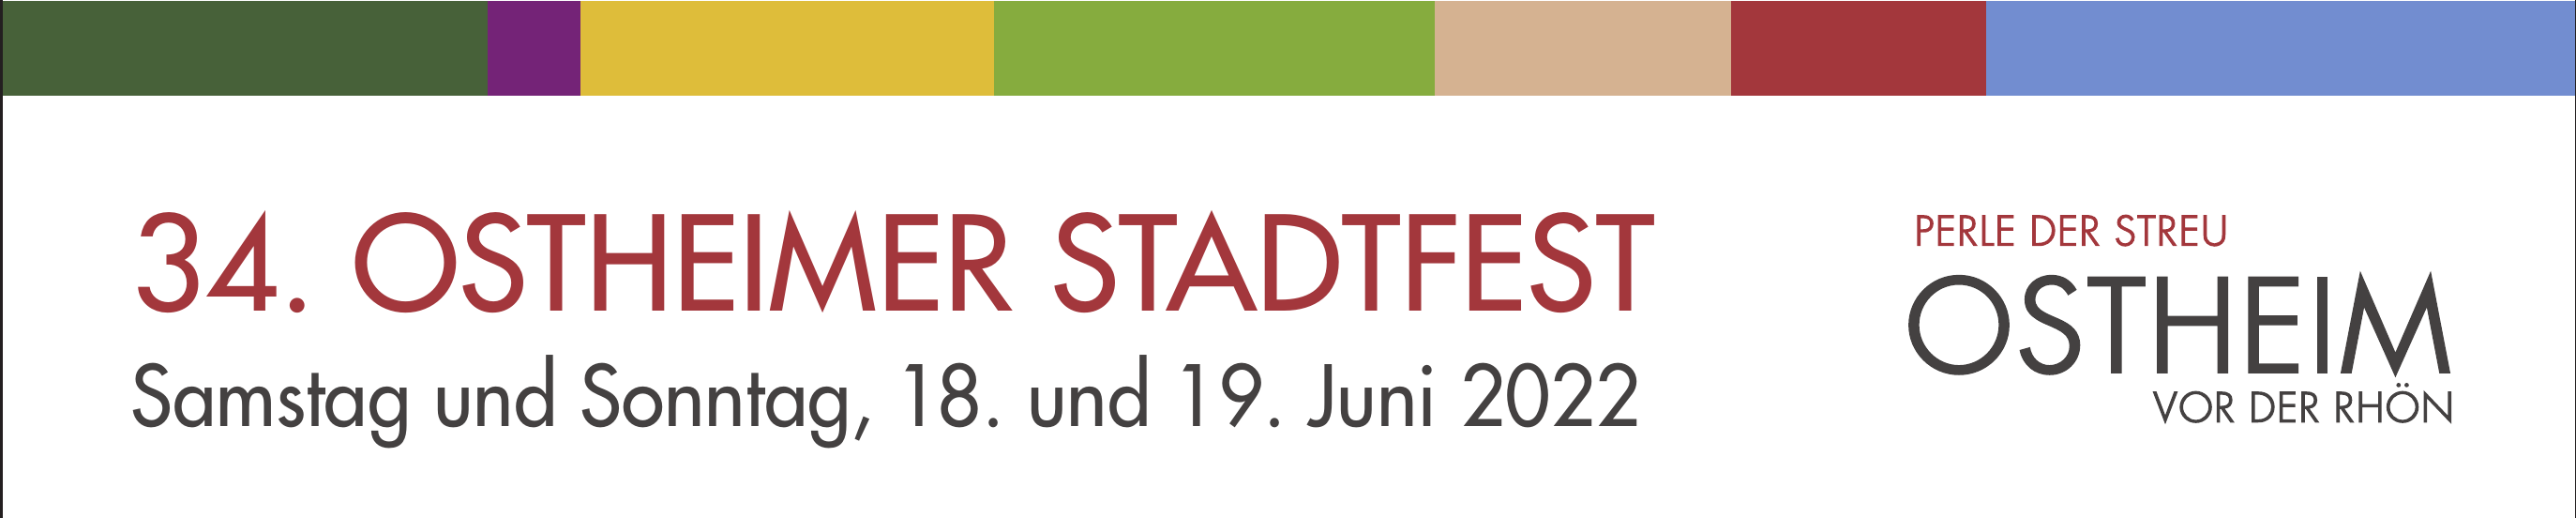 34. Ostheimer Stadtfest - Samstag und Sonntag, 18. und 19. Juni 2022 - Perle der Streu Ostheim vor der Rhön Image 1